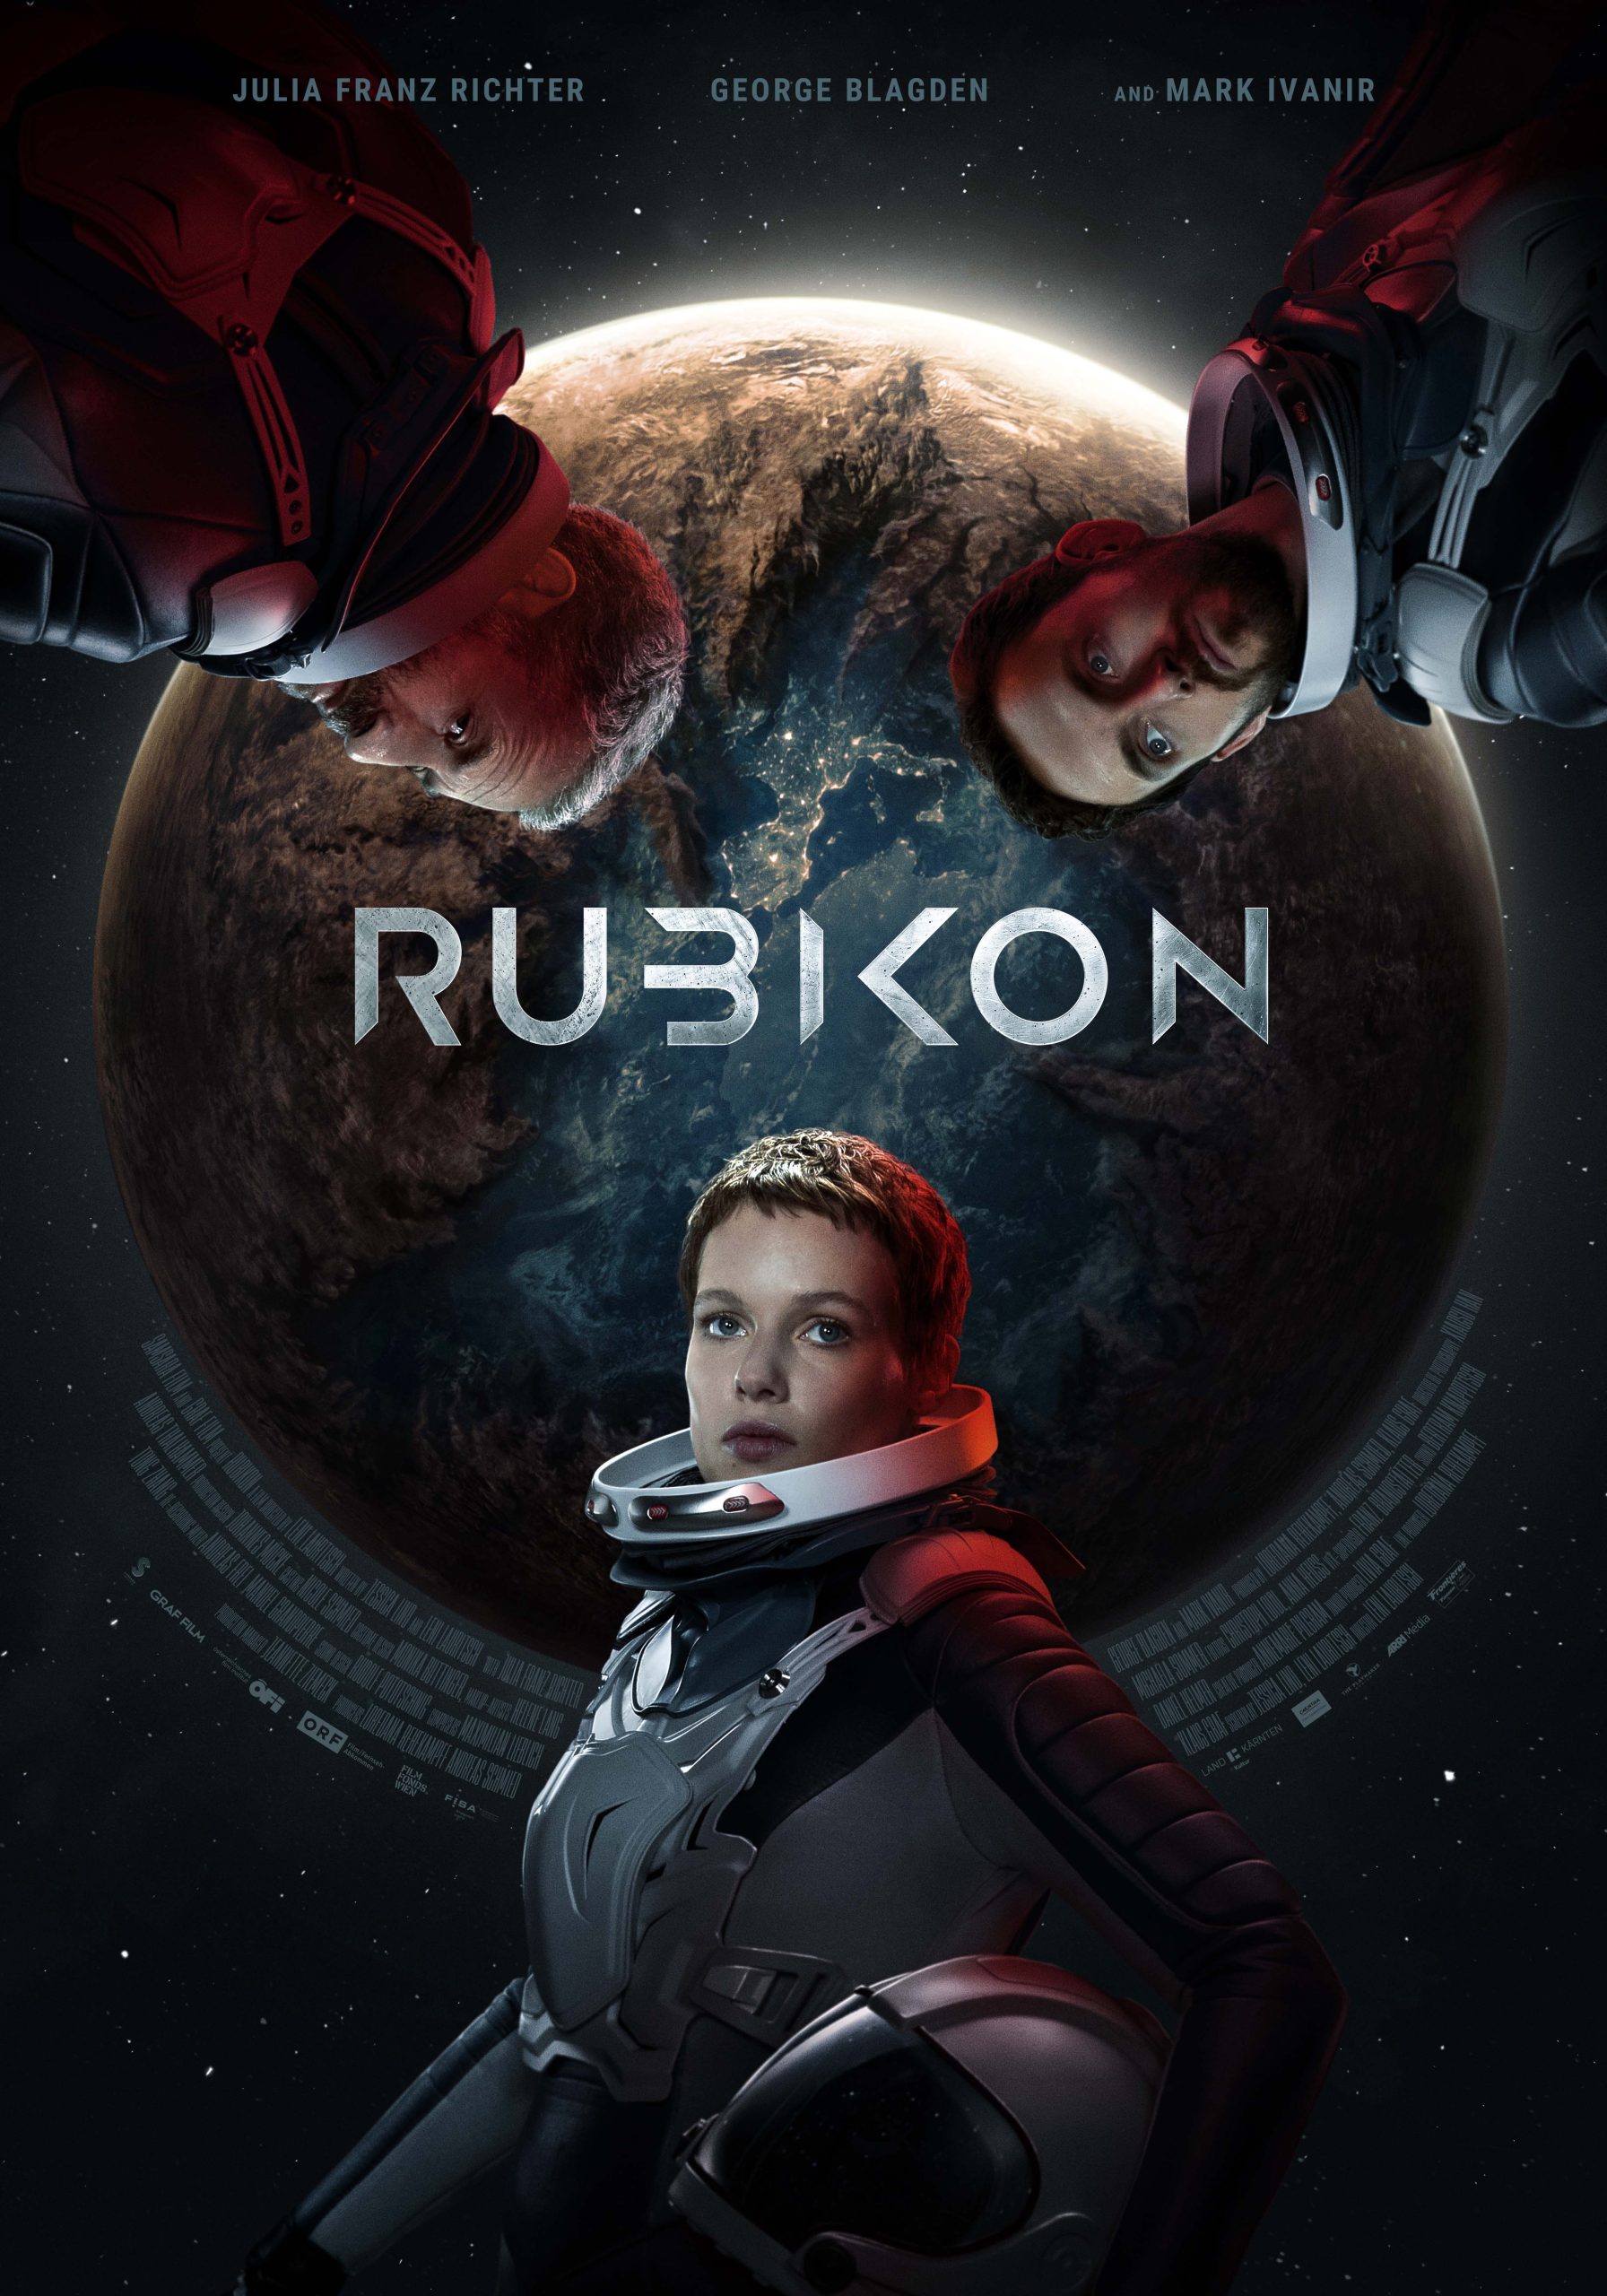 [NEWS] Il trailer del fantascientifico austriaco Rubikon